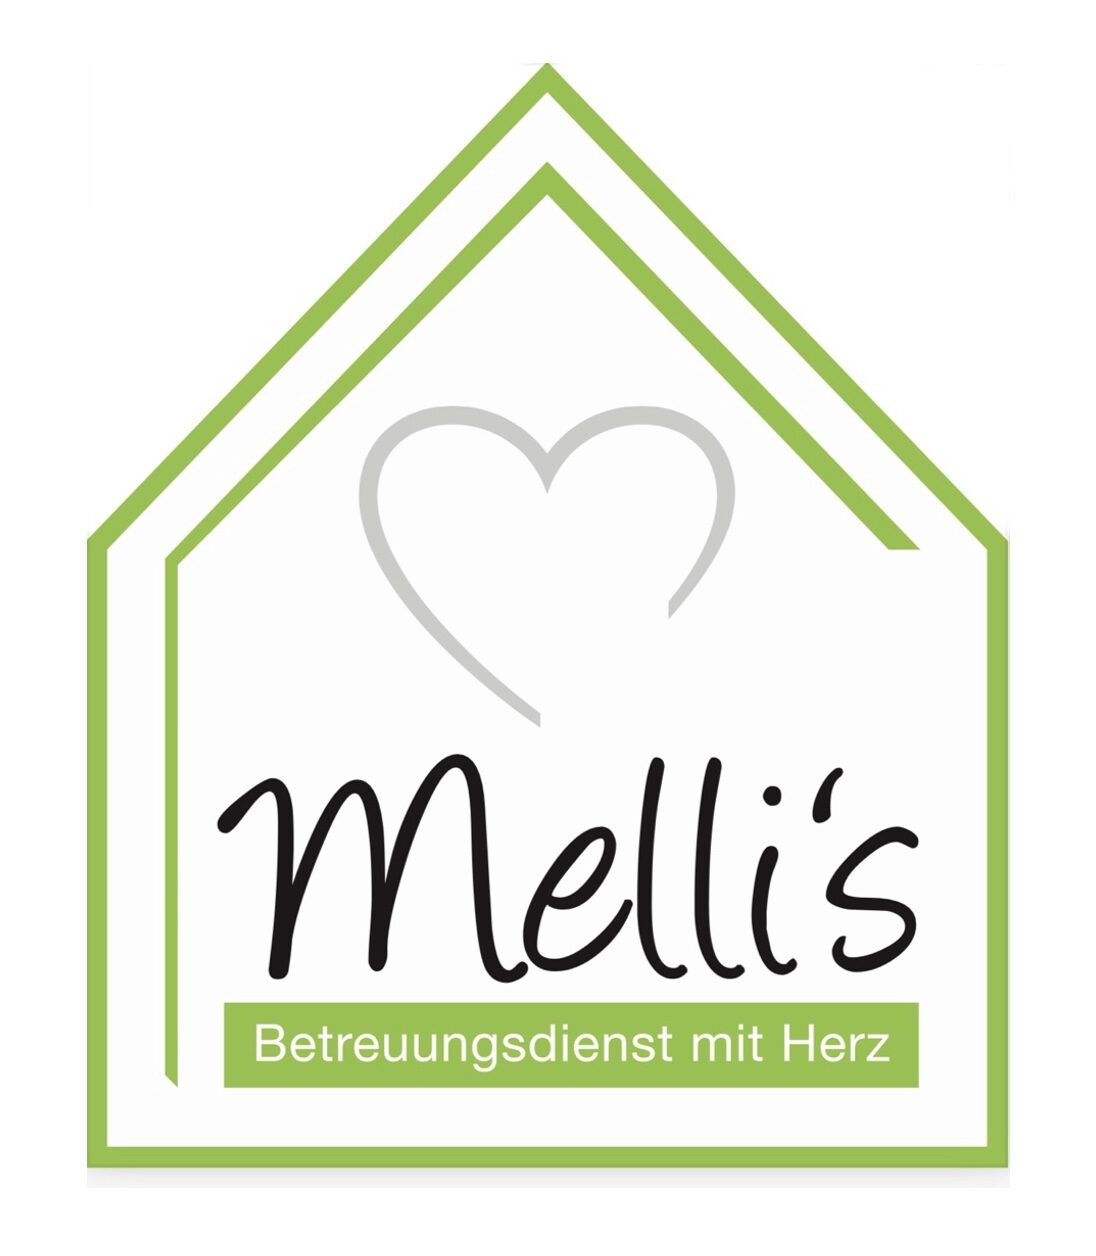 Melli's Betreuungsdienst mit Herz